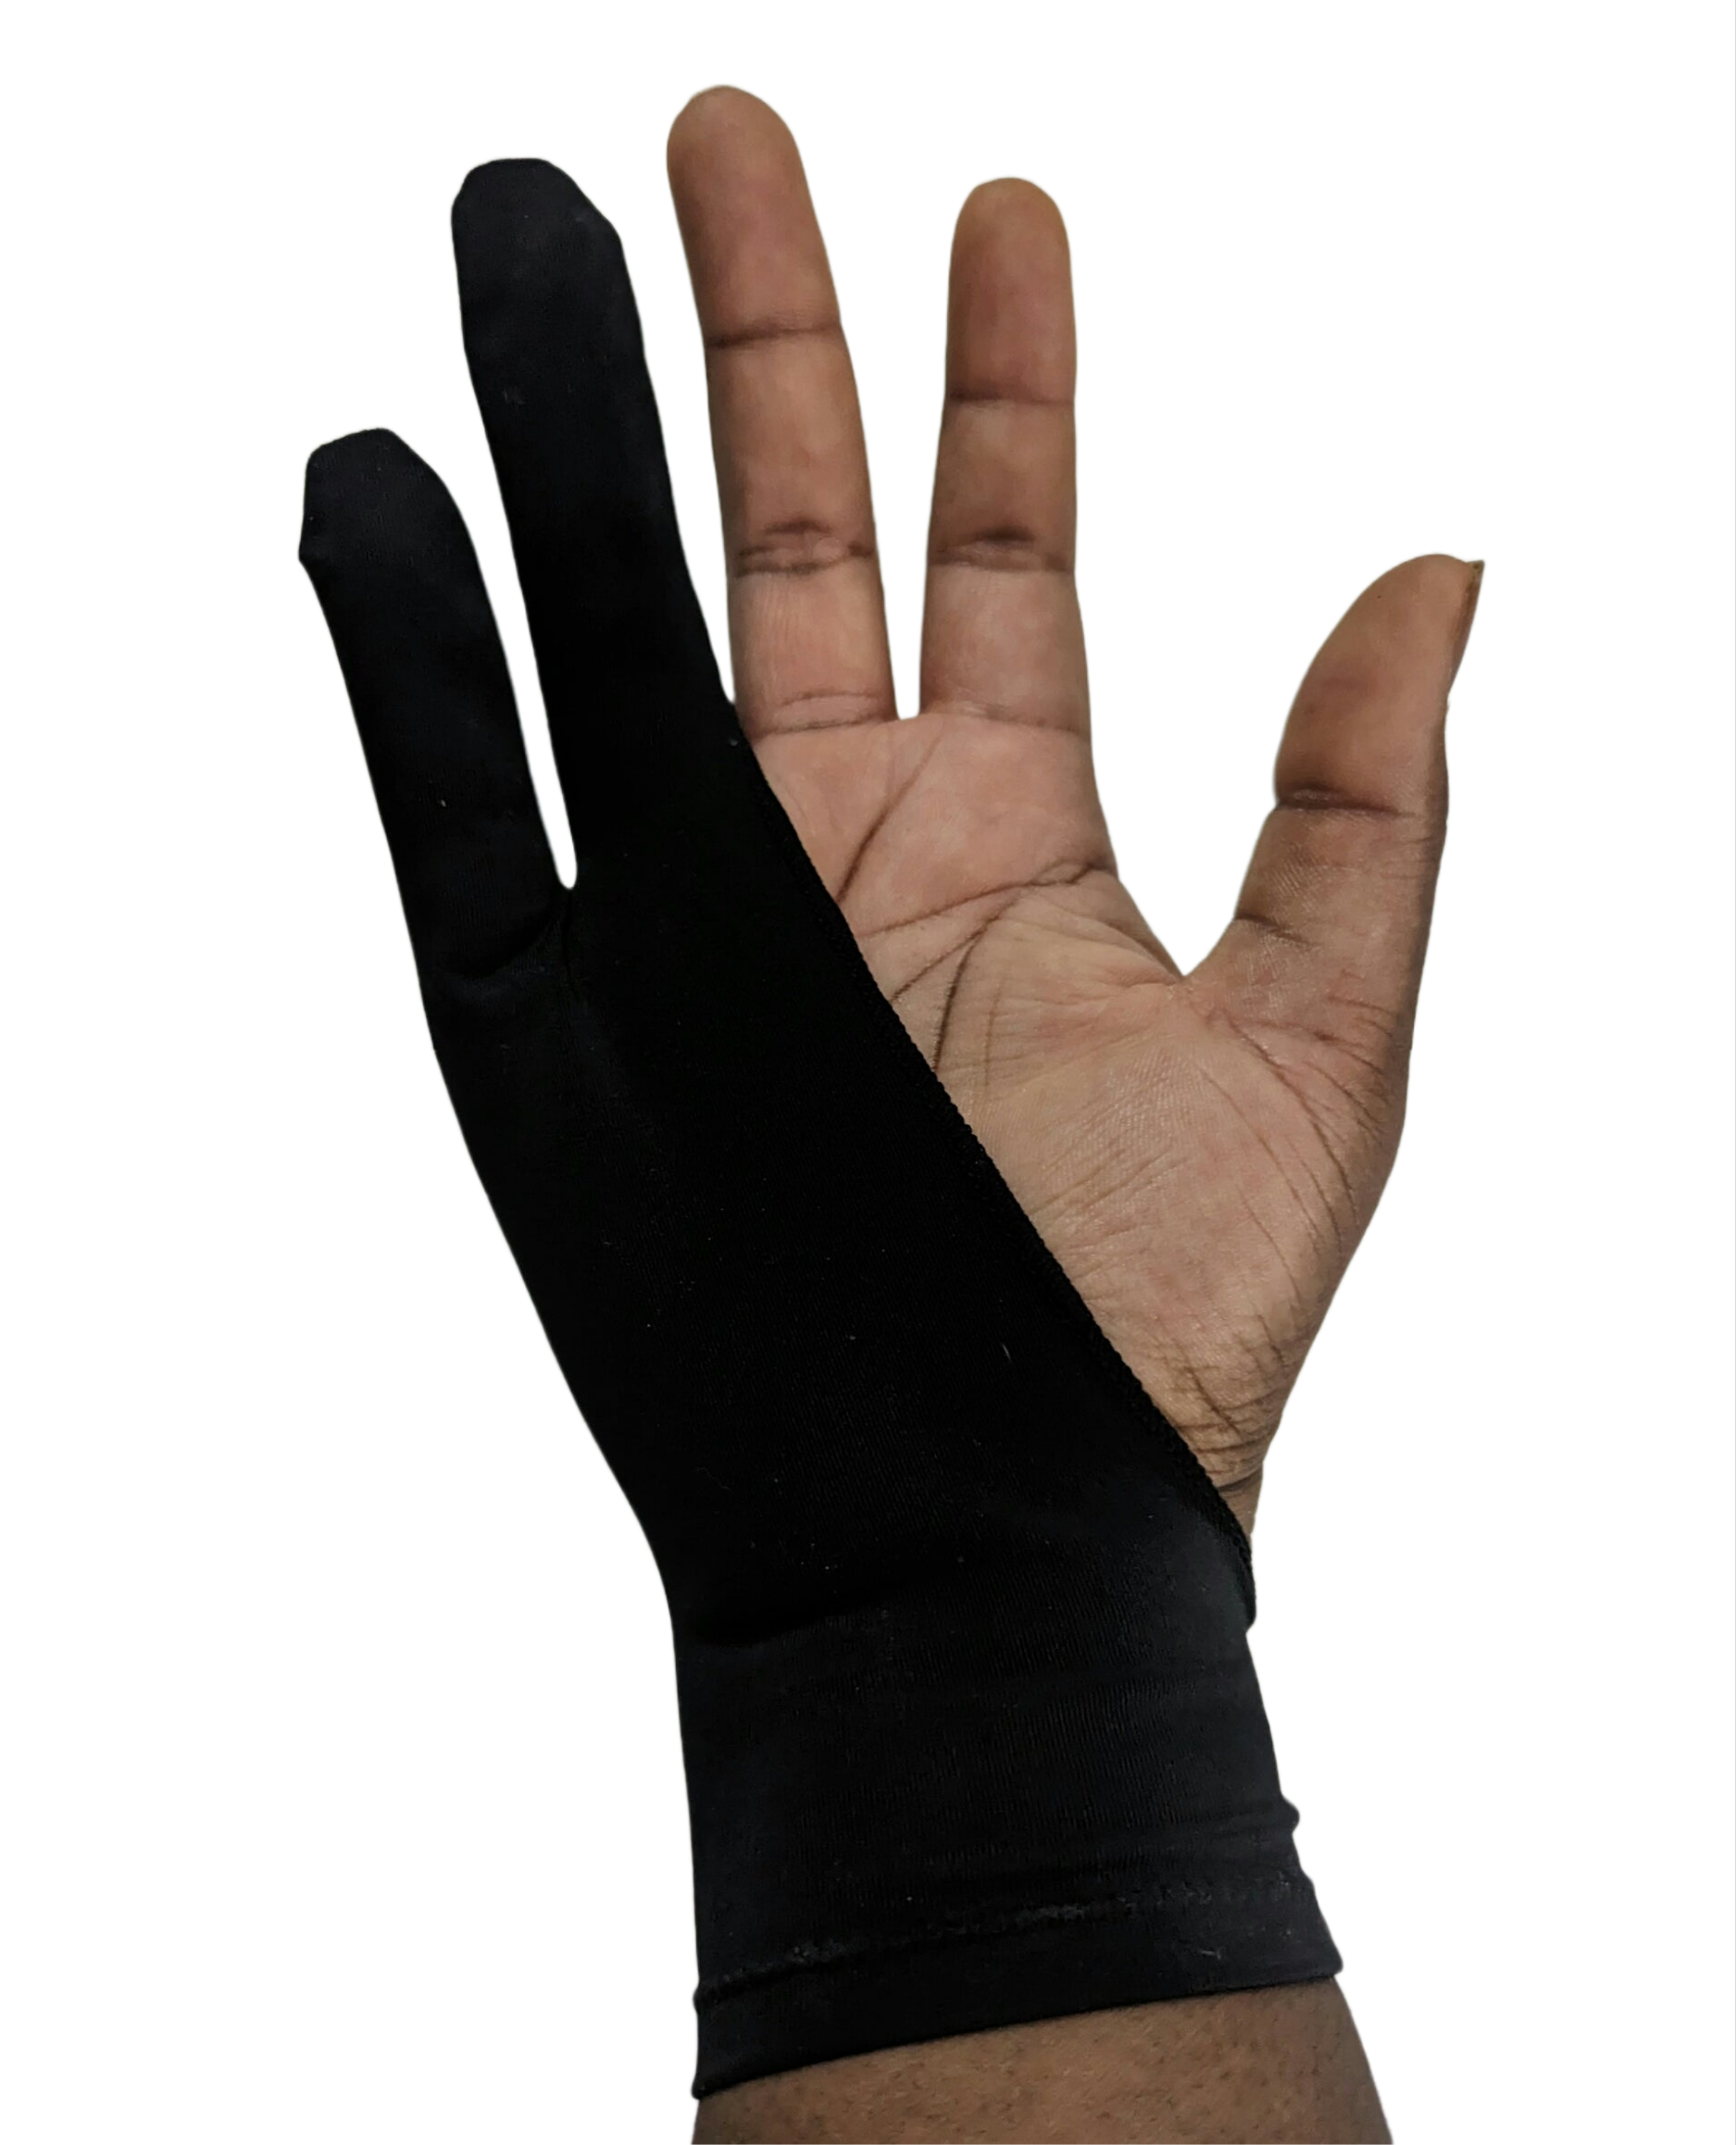 mikailan xs/s/m/l black artist glove two